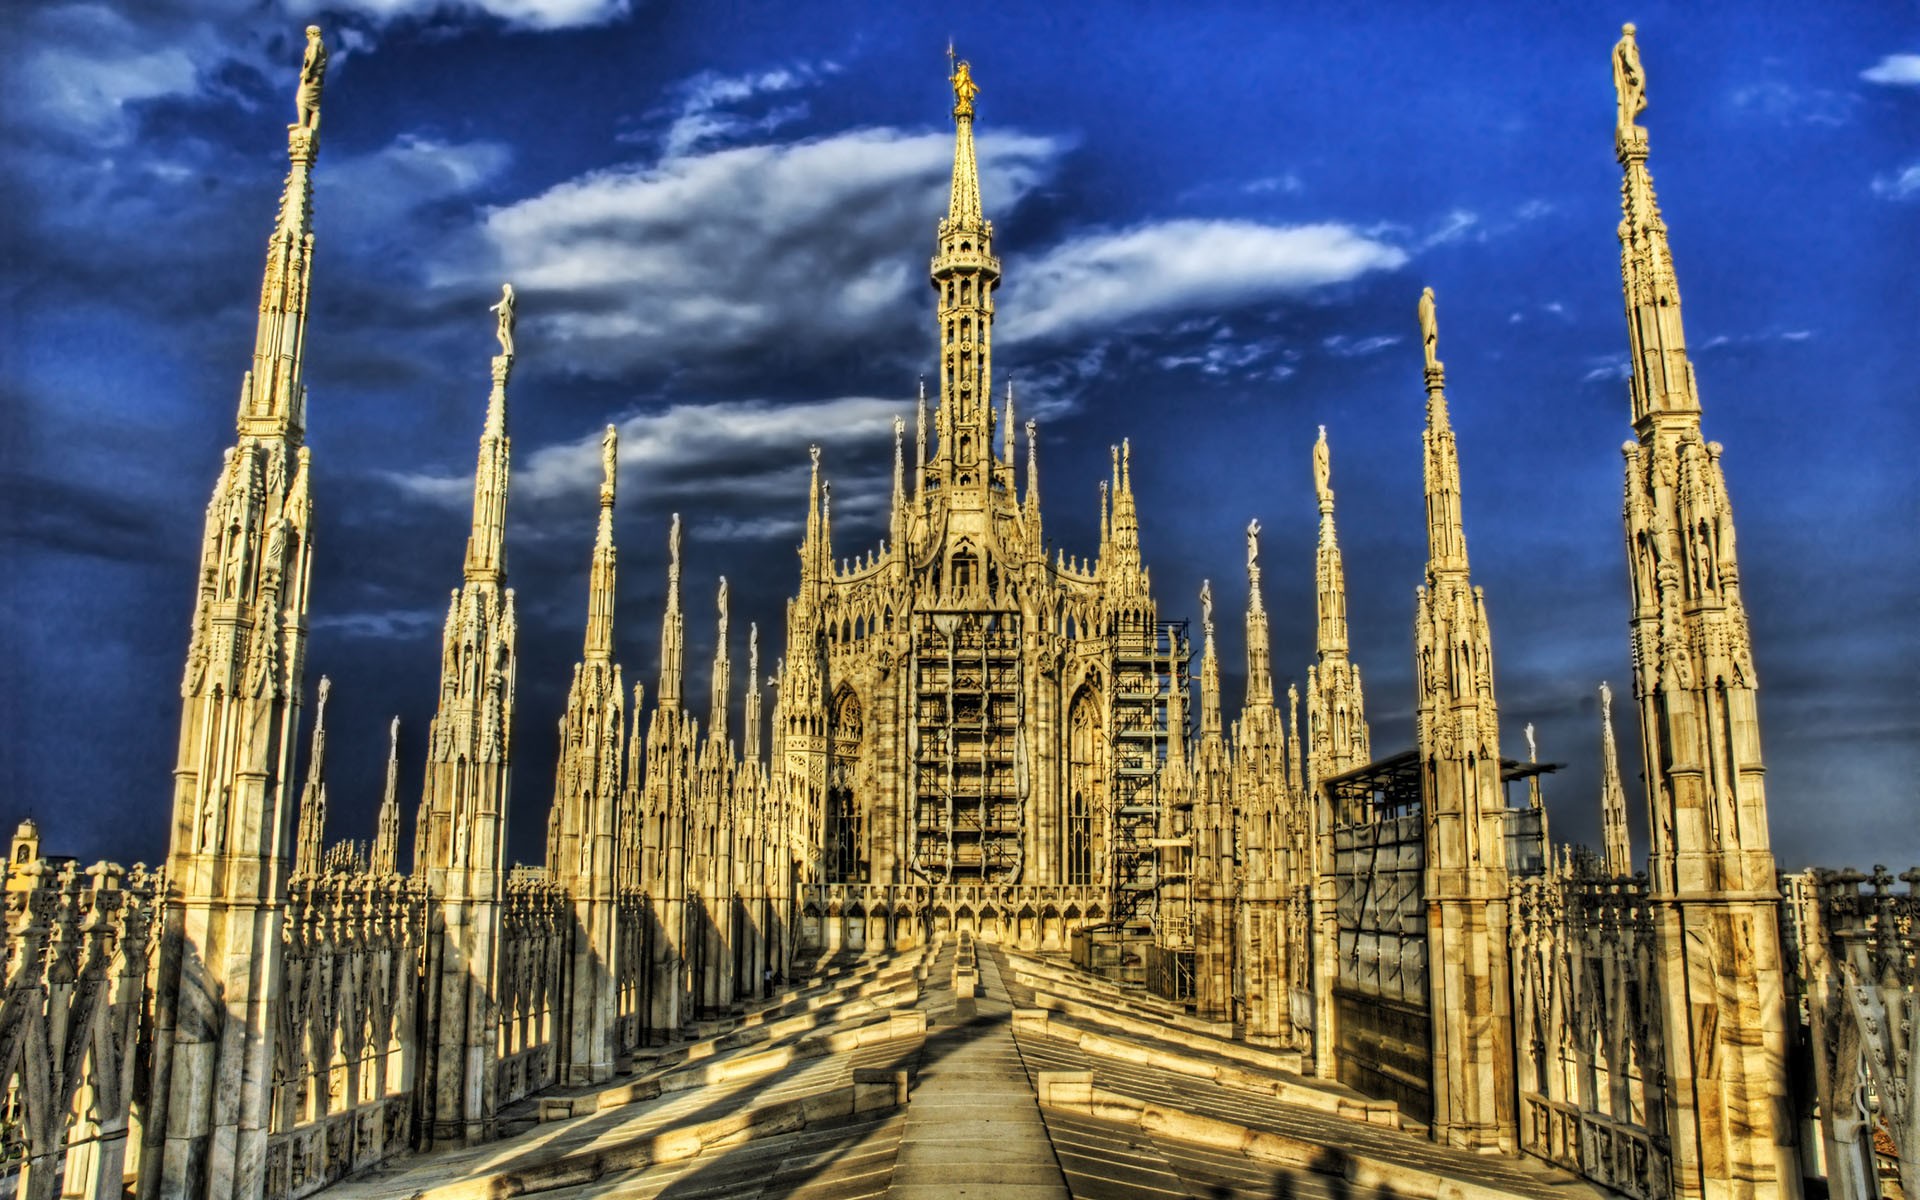 архитектура, здания, Milano, HDR фотографии, Дуомо ди Милано - обои на рабочий стол